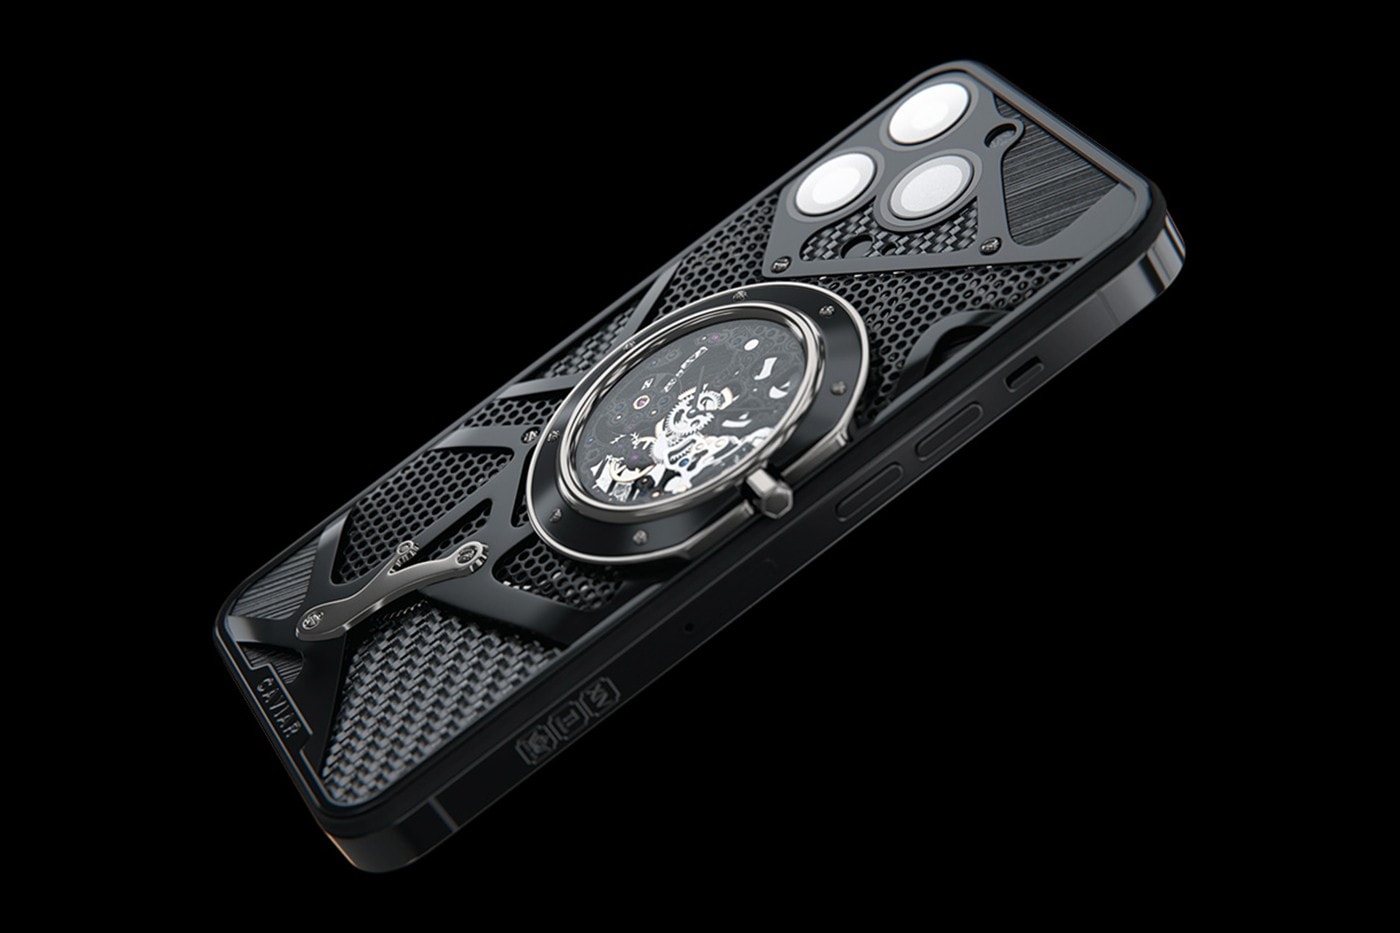 Caviar 推出「Rolex Daytona」主題 Apple iPhone 14 Pro 定製機型